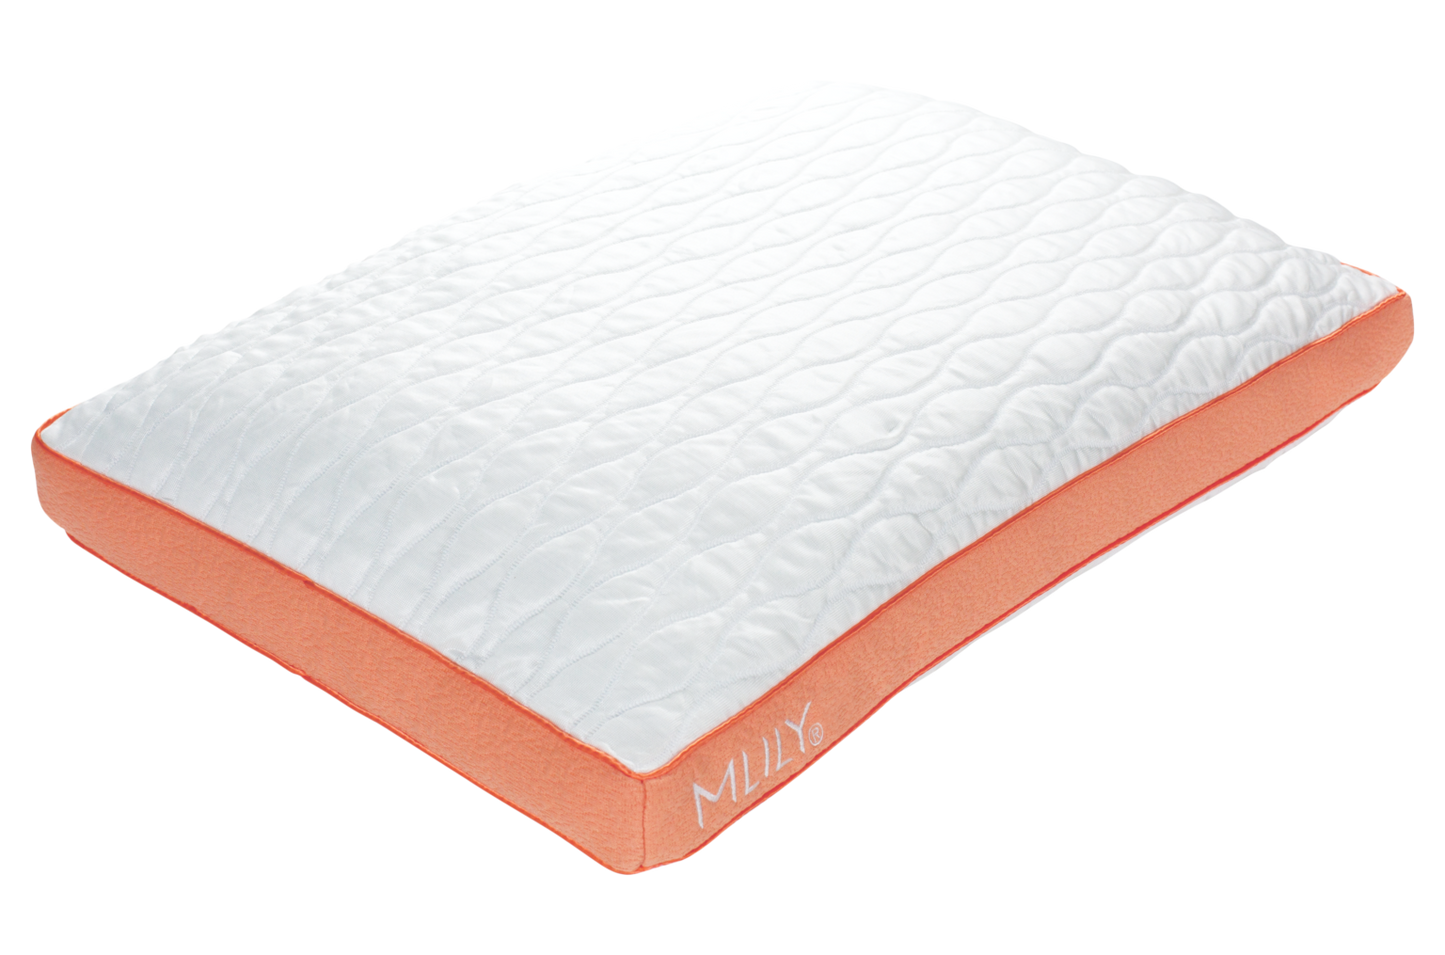 Adjustable Pillow - 99.00 MLILY Pillows HavenPlaceUSA